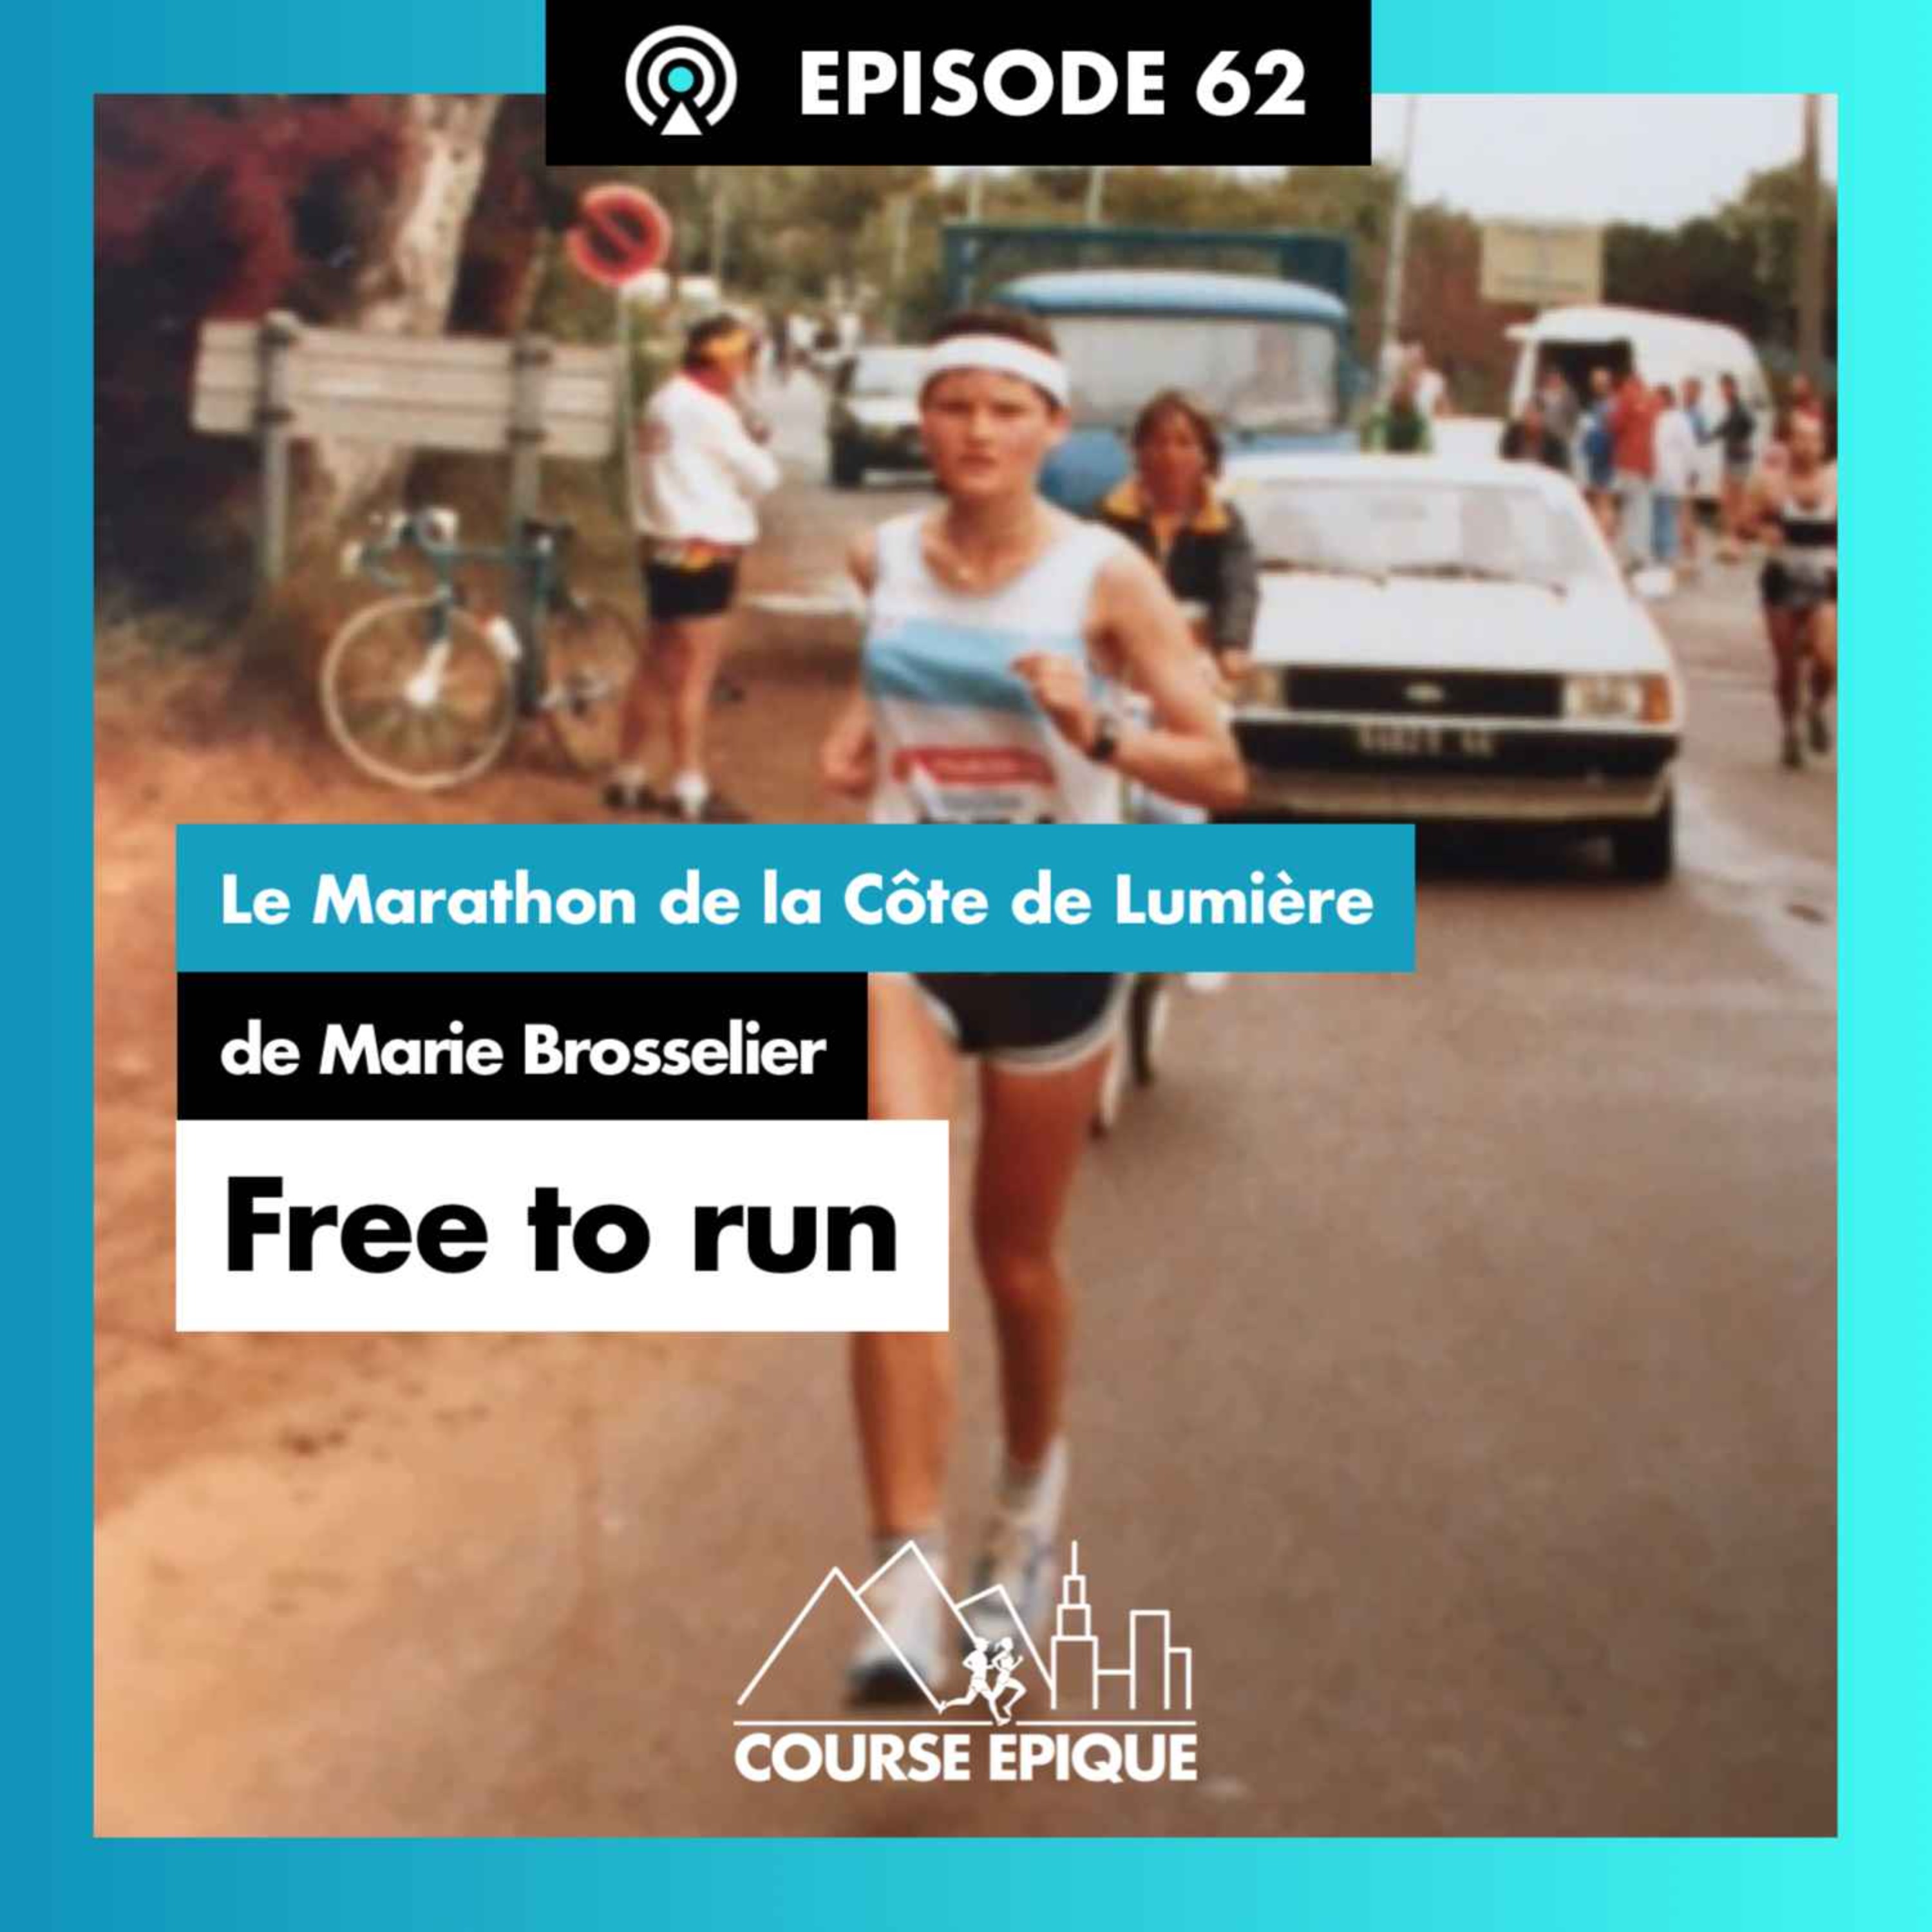 #62 "Free to run", le Marathon de la Côte de Lumière de Marie Brosselier